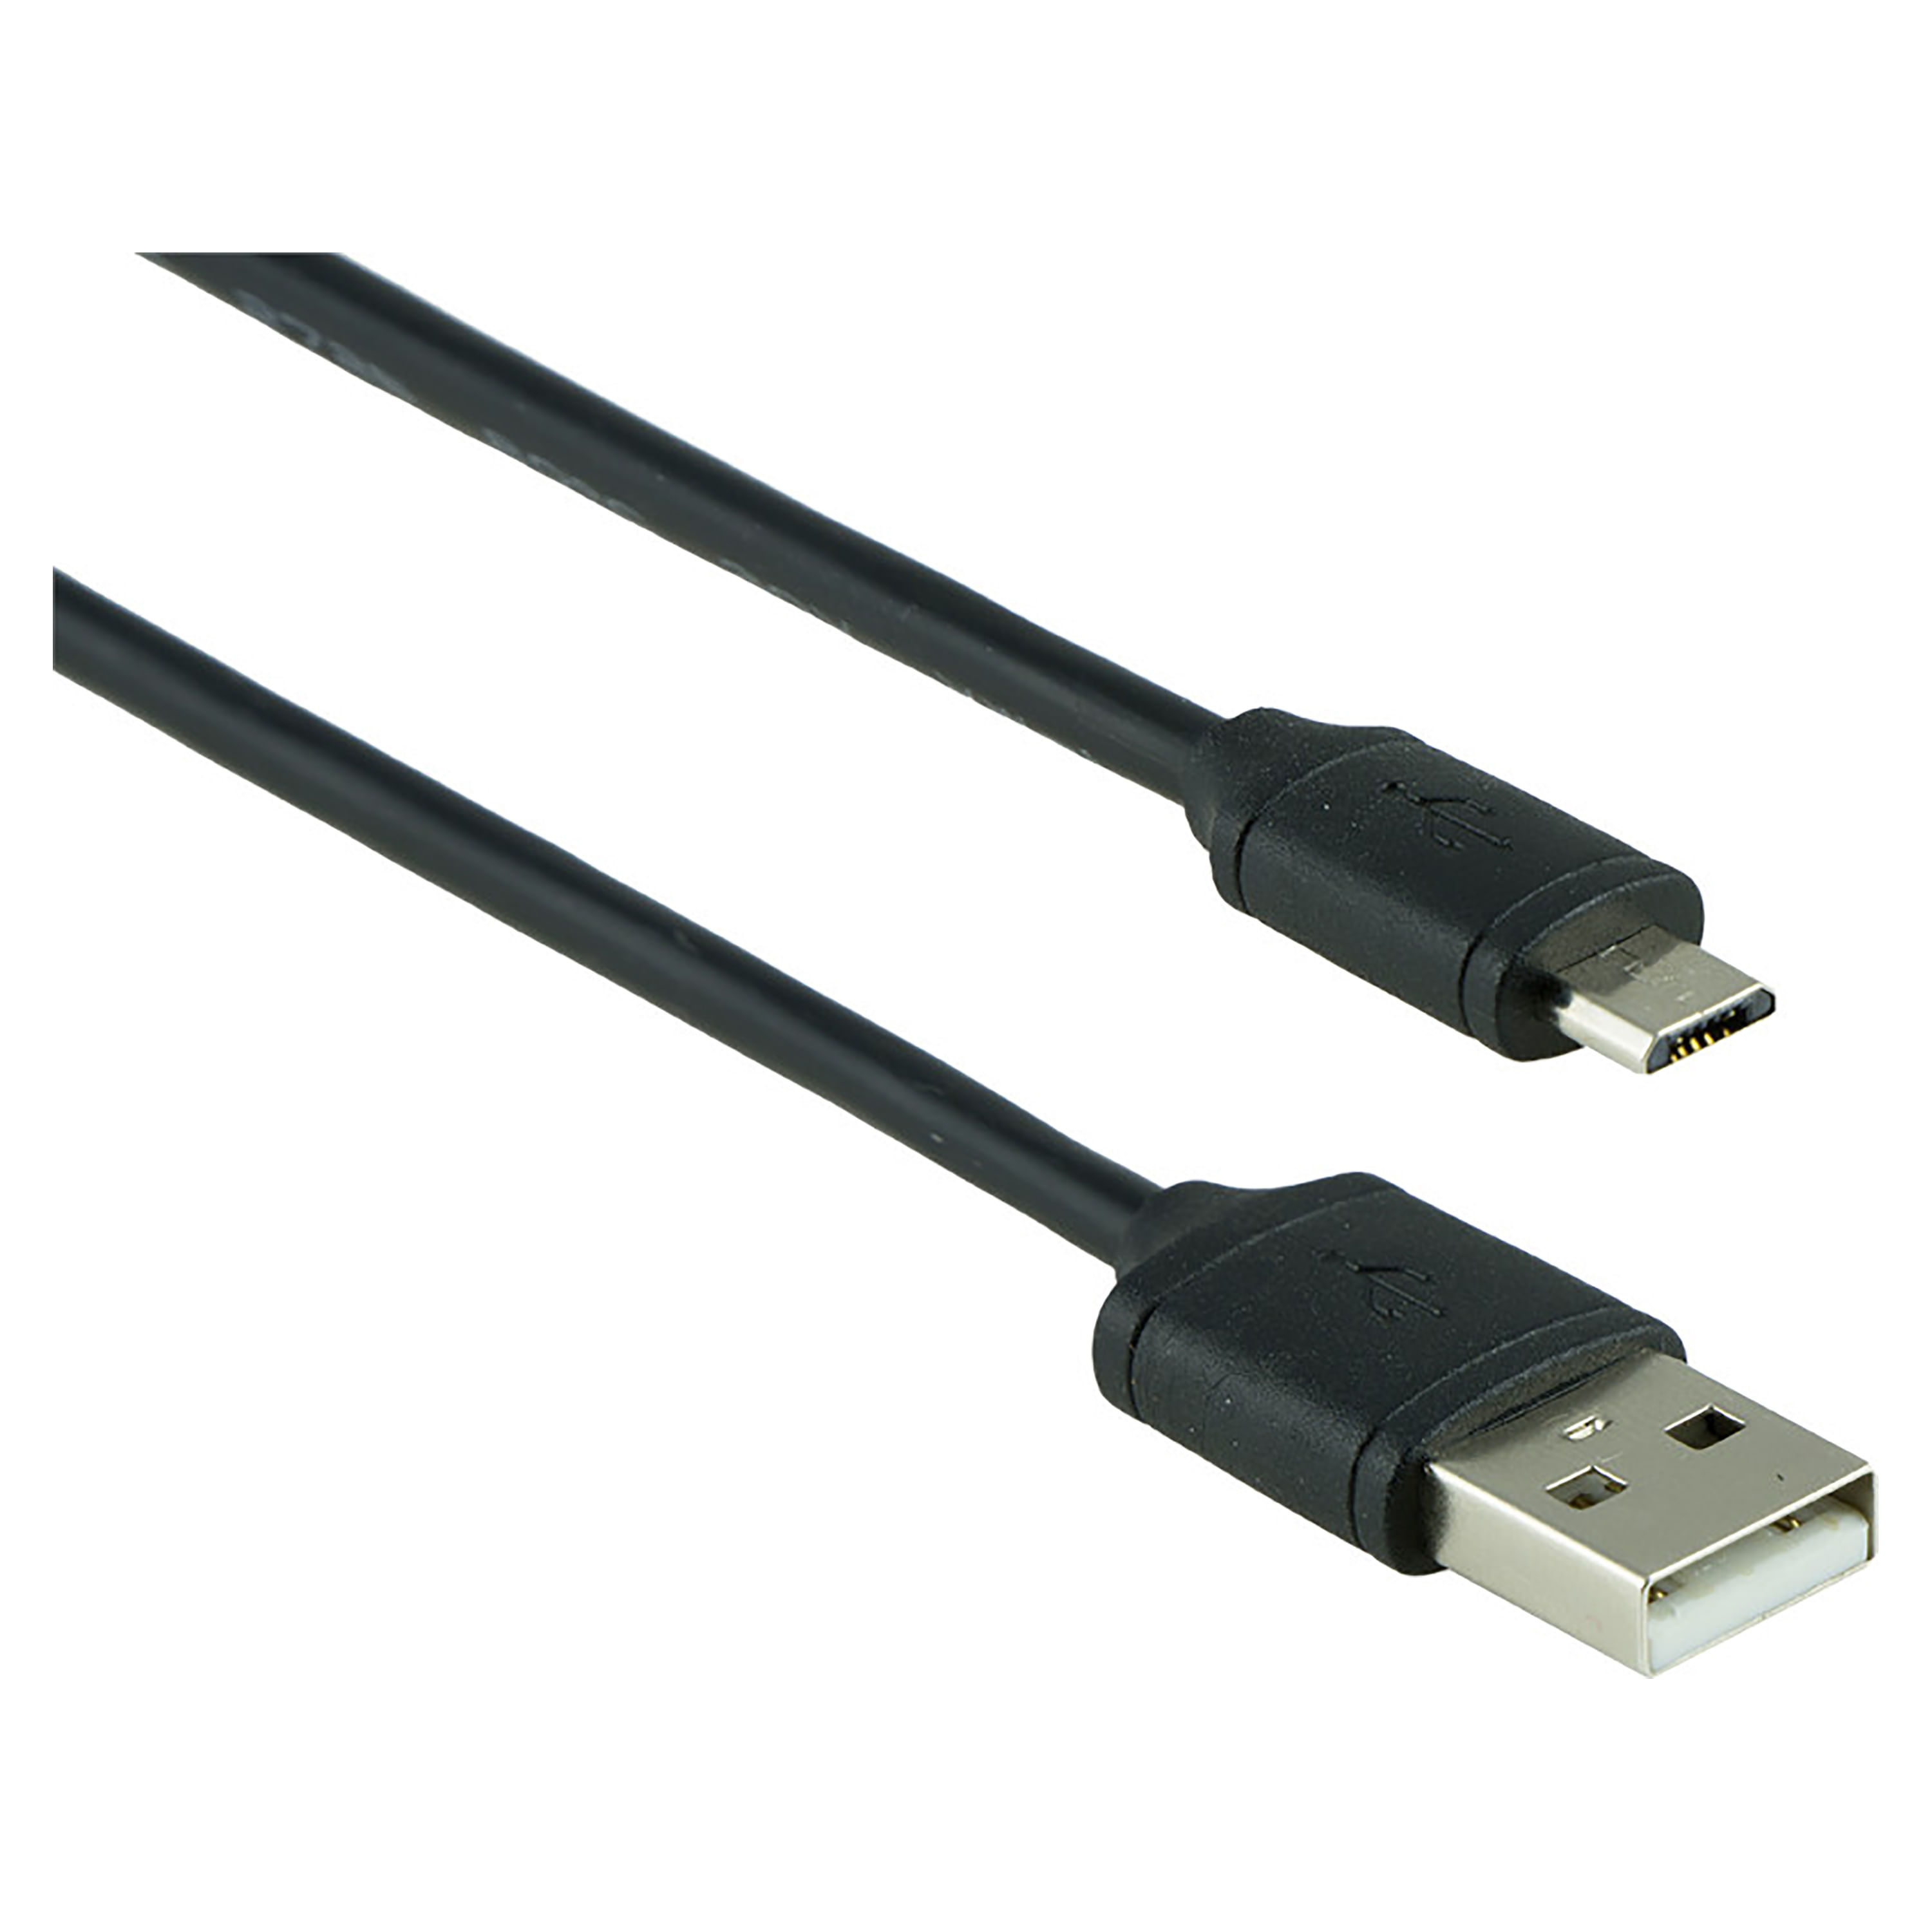 Cargador USB de pared doble cable micro USB - CX3216BK - MaxiTec